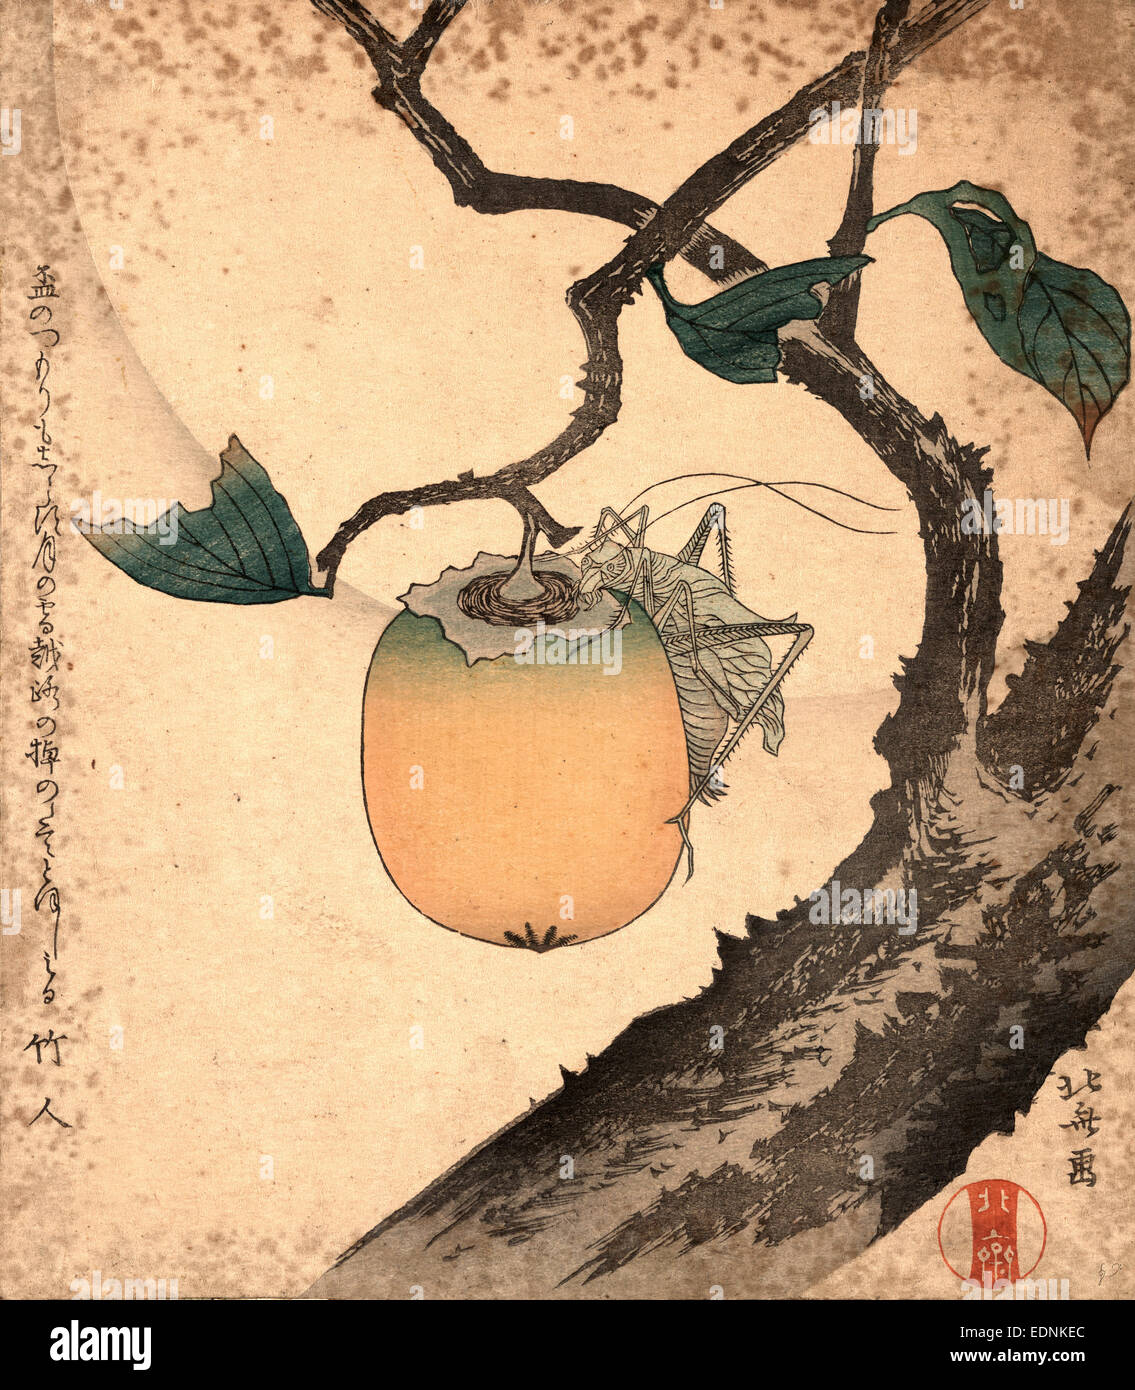 Kaki ni Kirigirisu, Grasshopper Essen Persimmon., Katsushika, Hokusai, 1760-1849, Künstler, [zwischen 1870 und 1900], 1 print: Holzschnitt, Farbe; 20,8 x 18,2 cm., zeigt Print eine Heuschrecke Essen eine Kaki an einem Ast hängen. Stockfoto